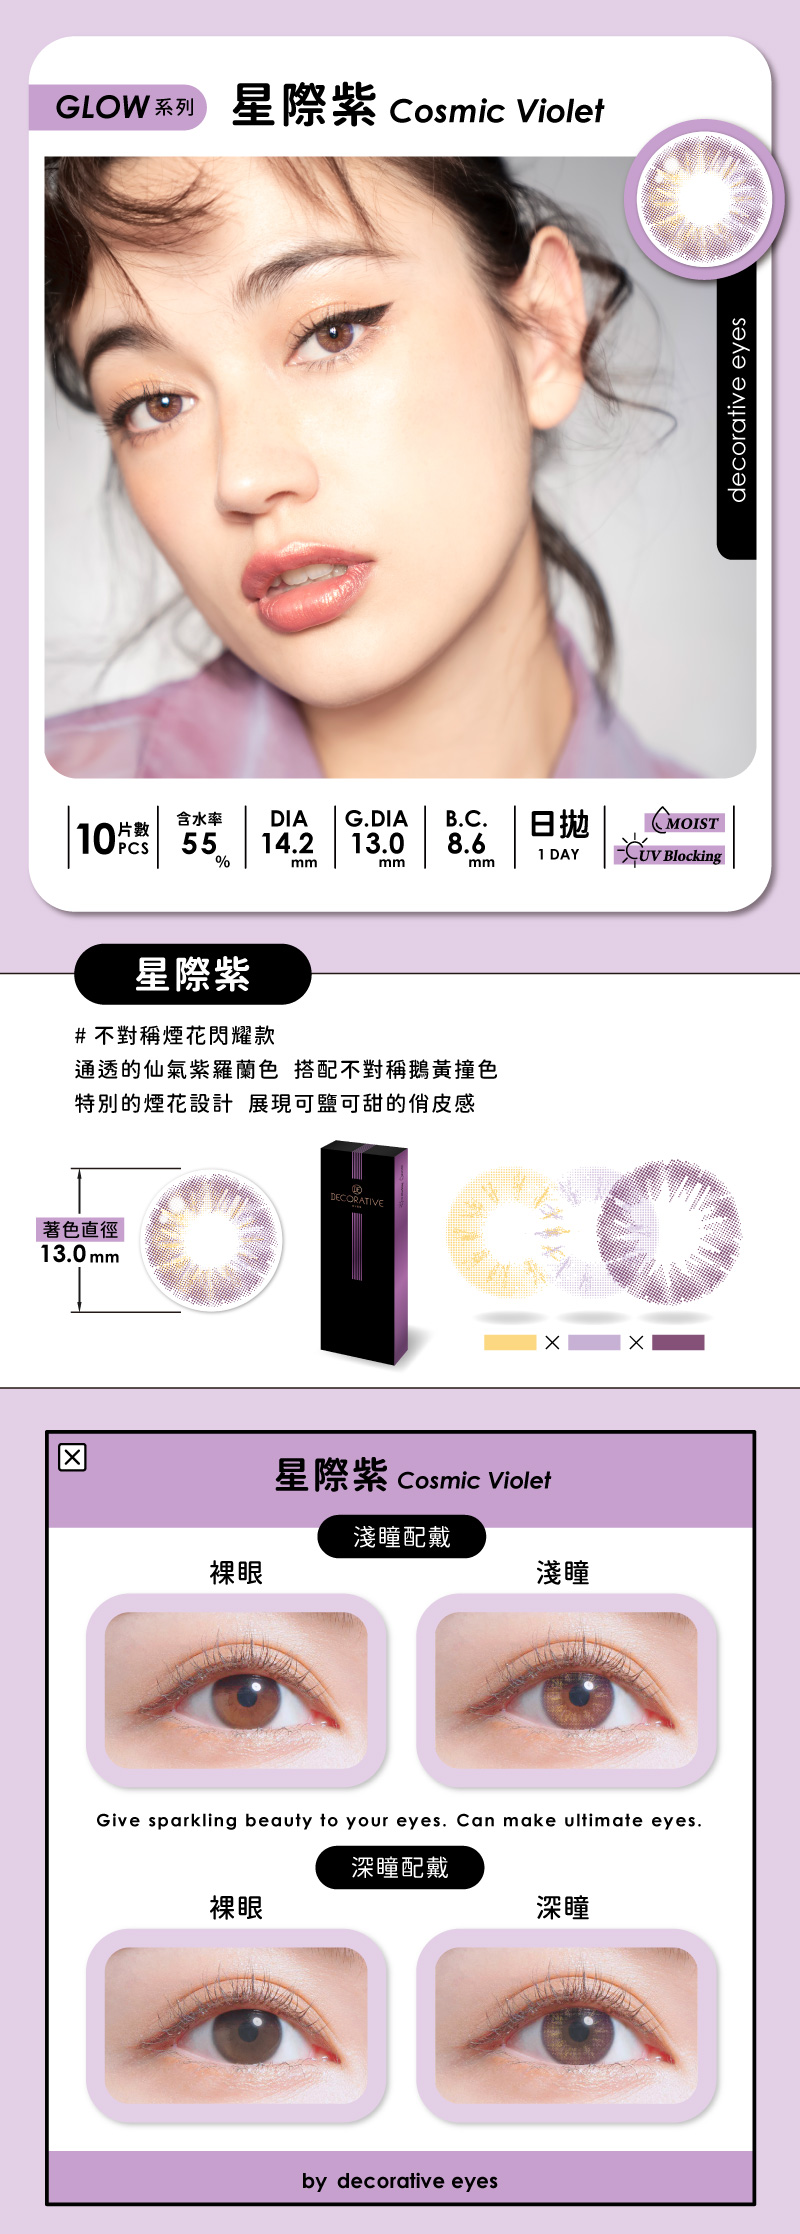 星際紫,視妝美,decorative,隱形眼鏡,彩色日拋,日本品牌,小直徑隱眼